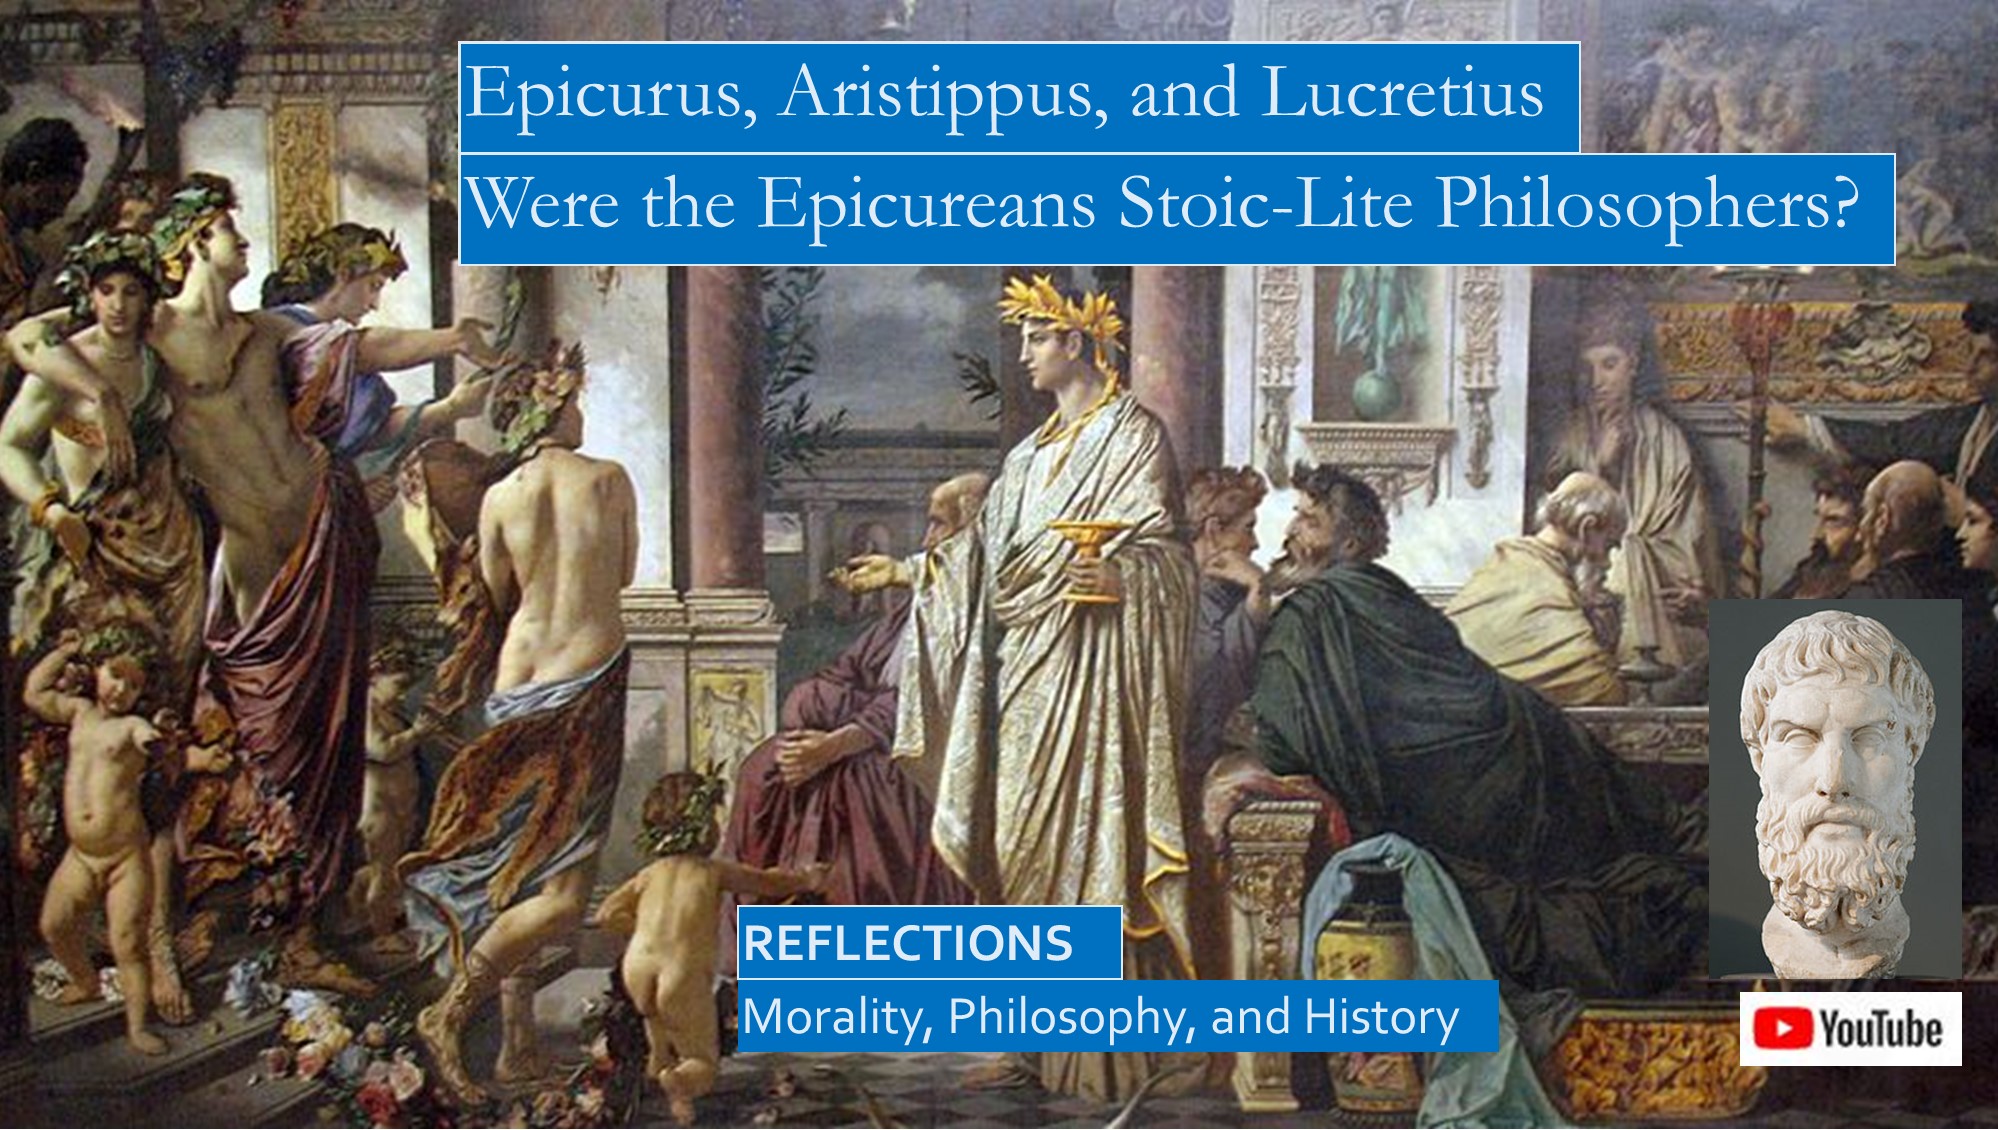 Epicurus, Aristippus, and Lucretius: History of Epicurean Philosophy